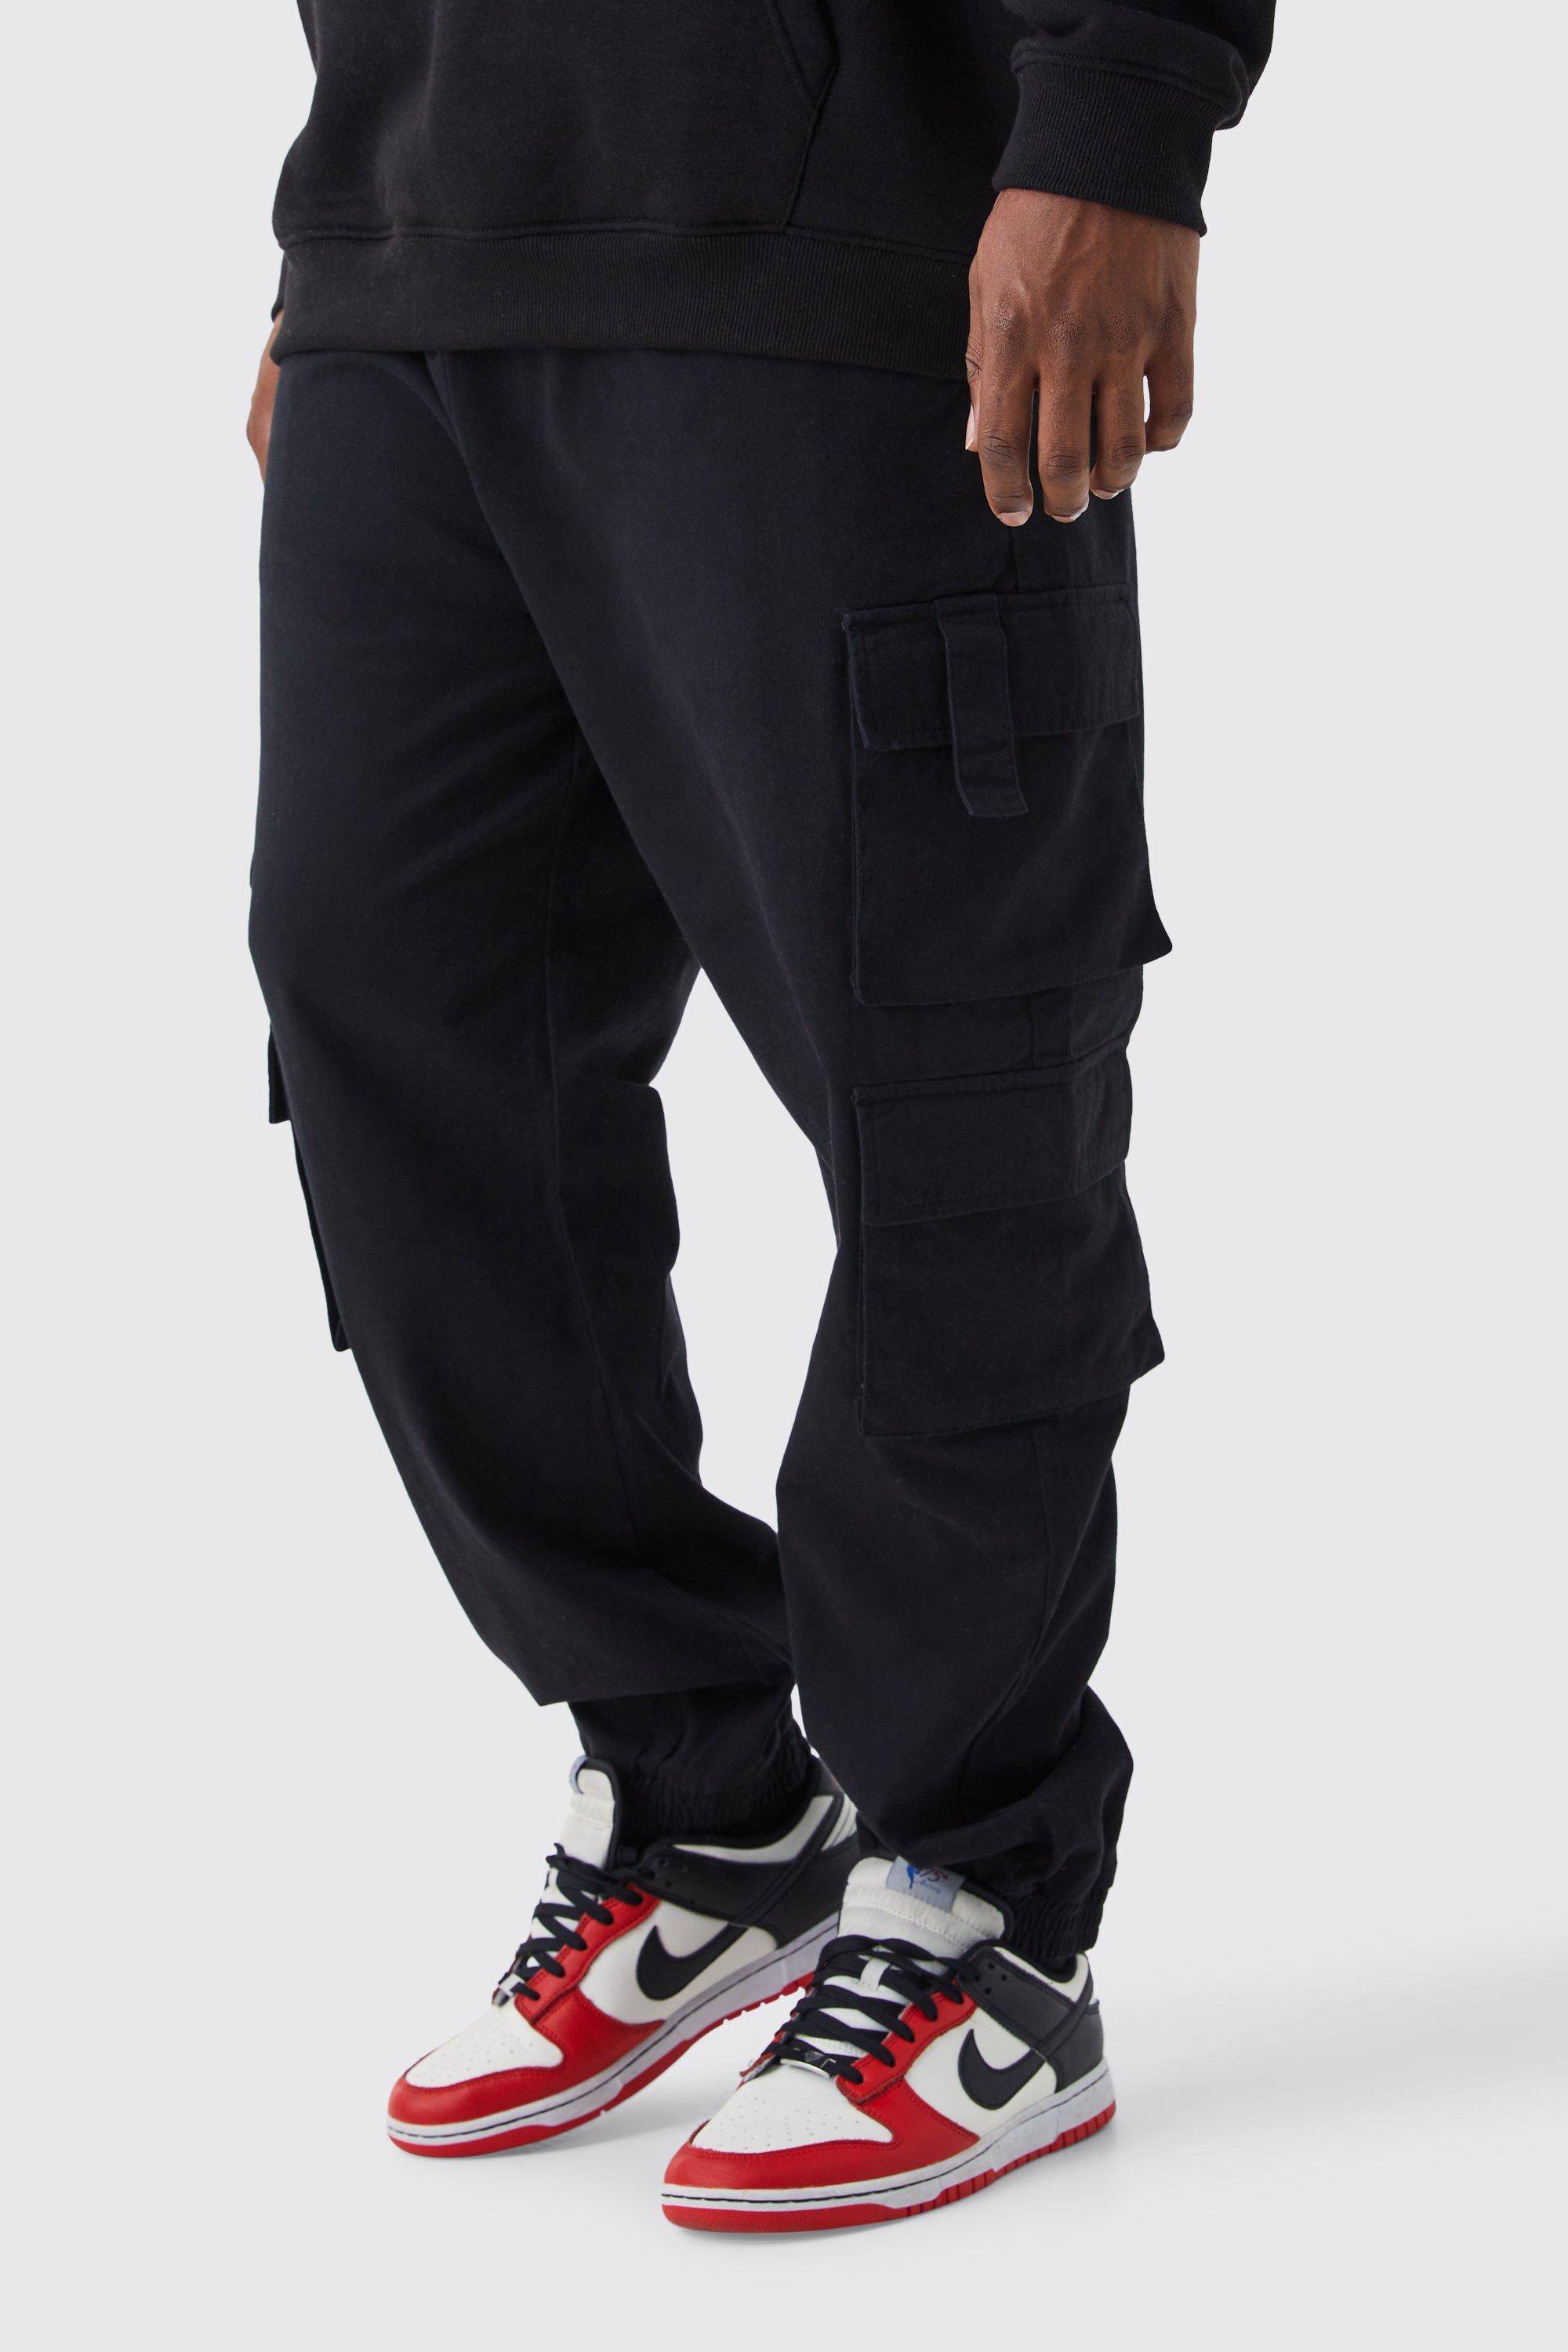 Image of Pantaloni tuta Plus Size Slim Fit con tasche Cargo e vita elasticizzata, Nero